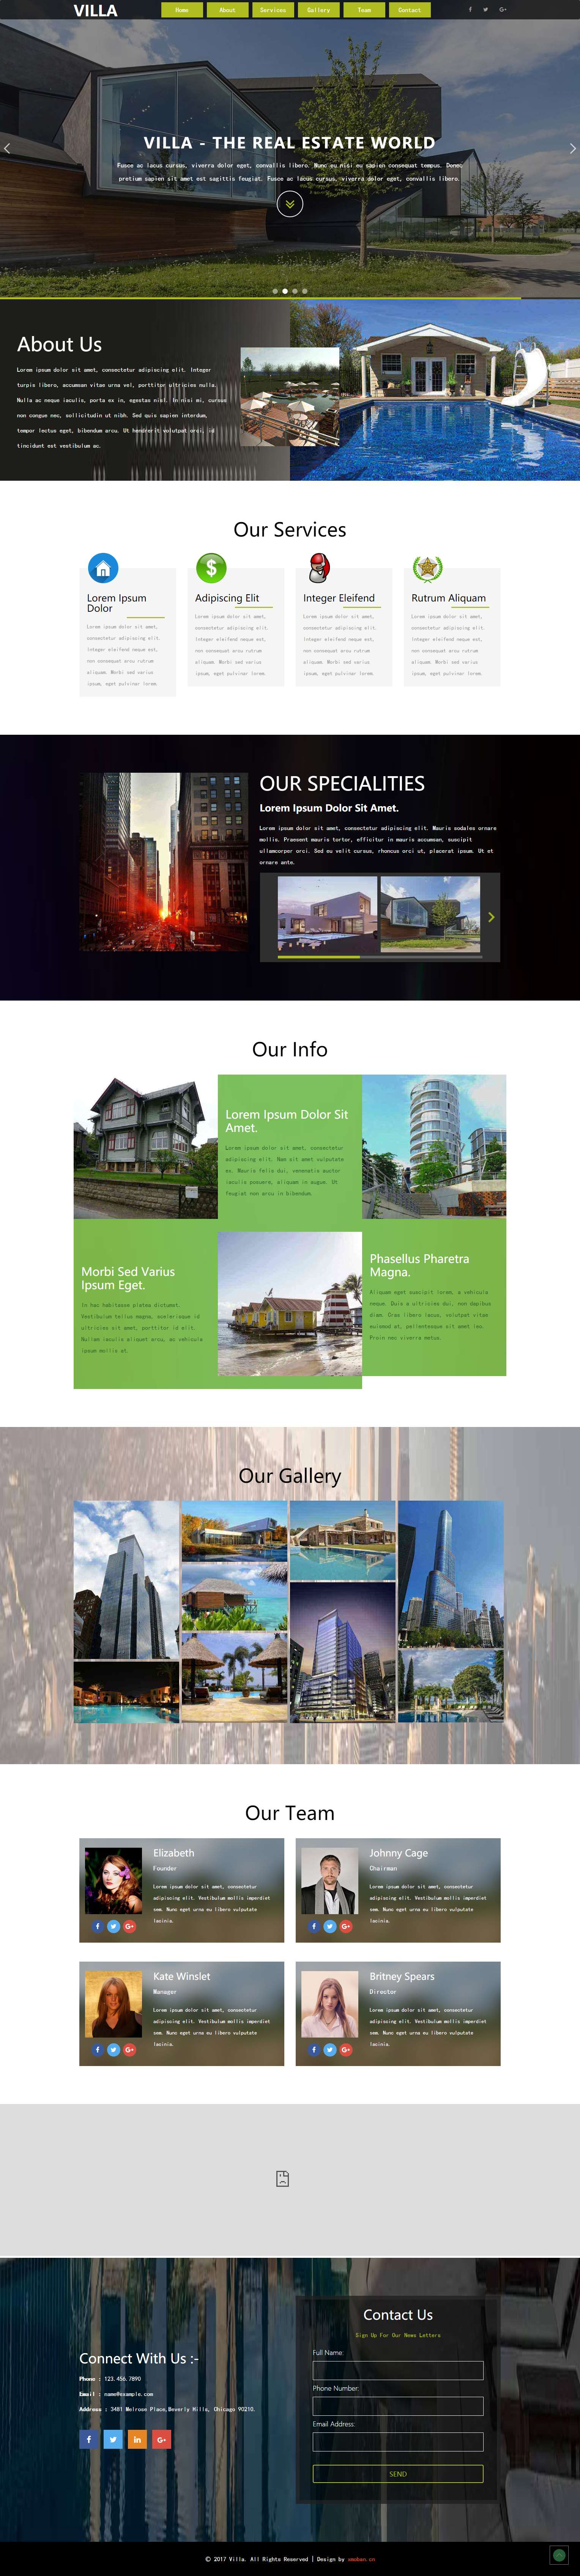 绿色欧美风格的房地产企业网站源码下载